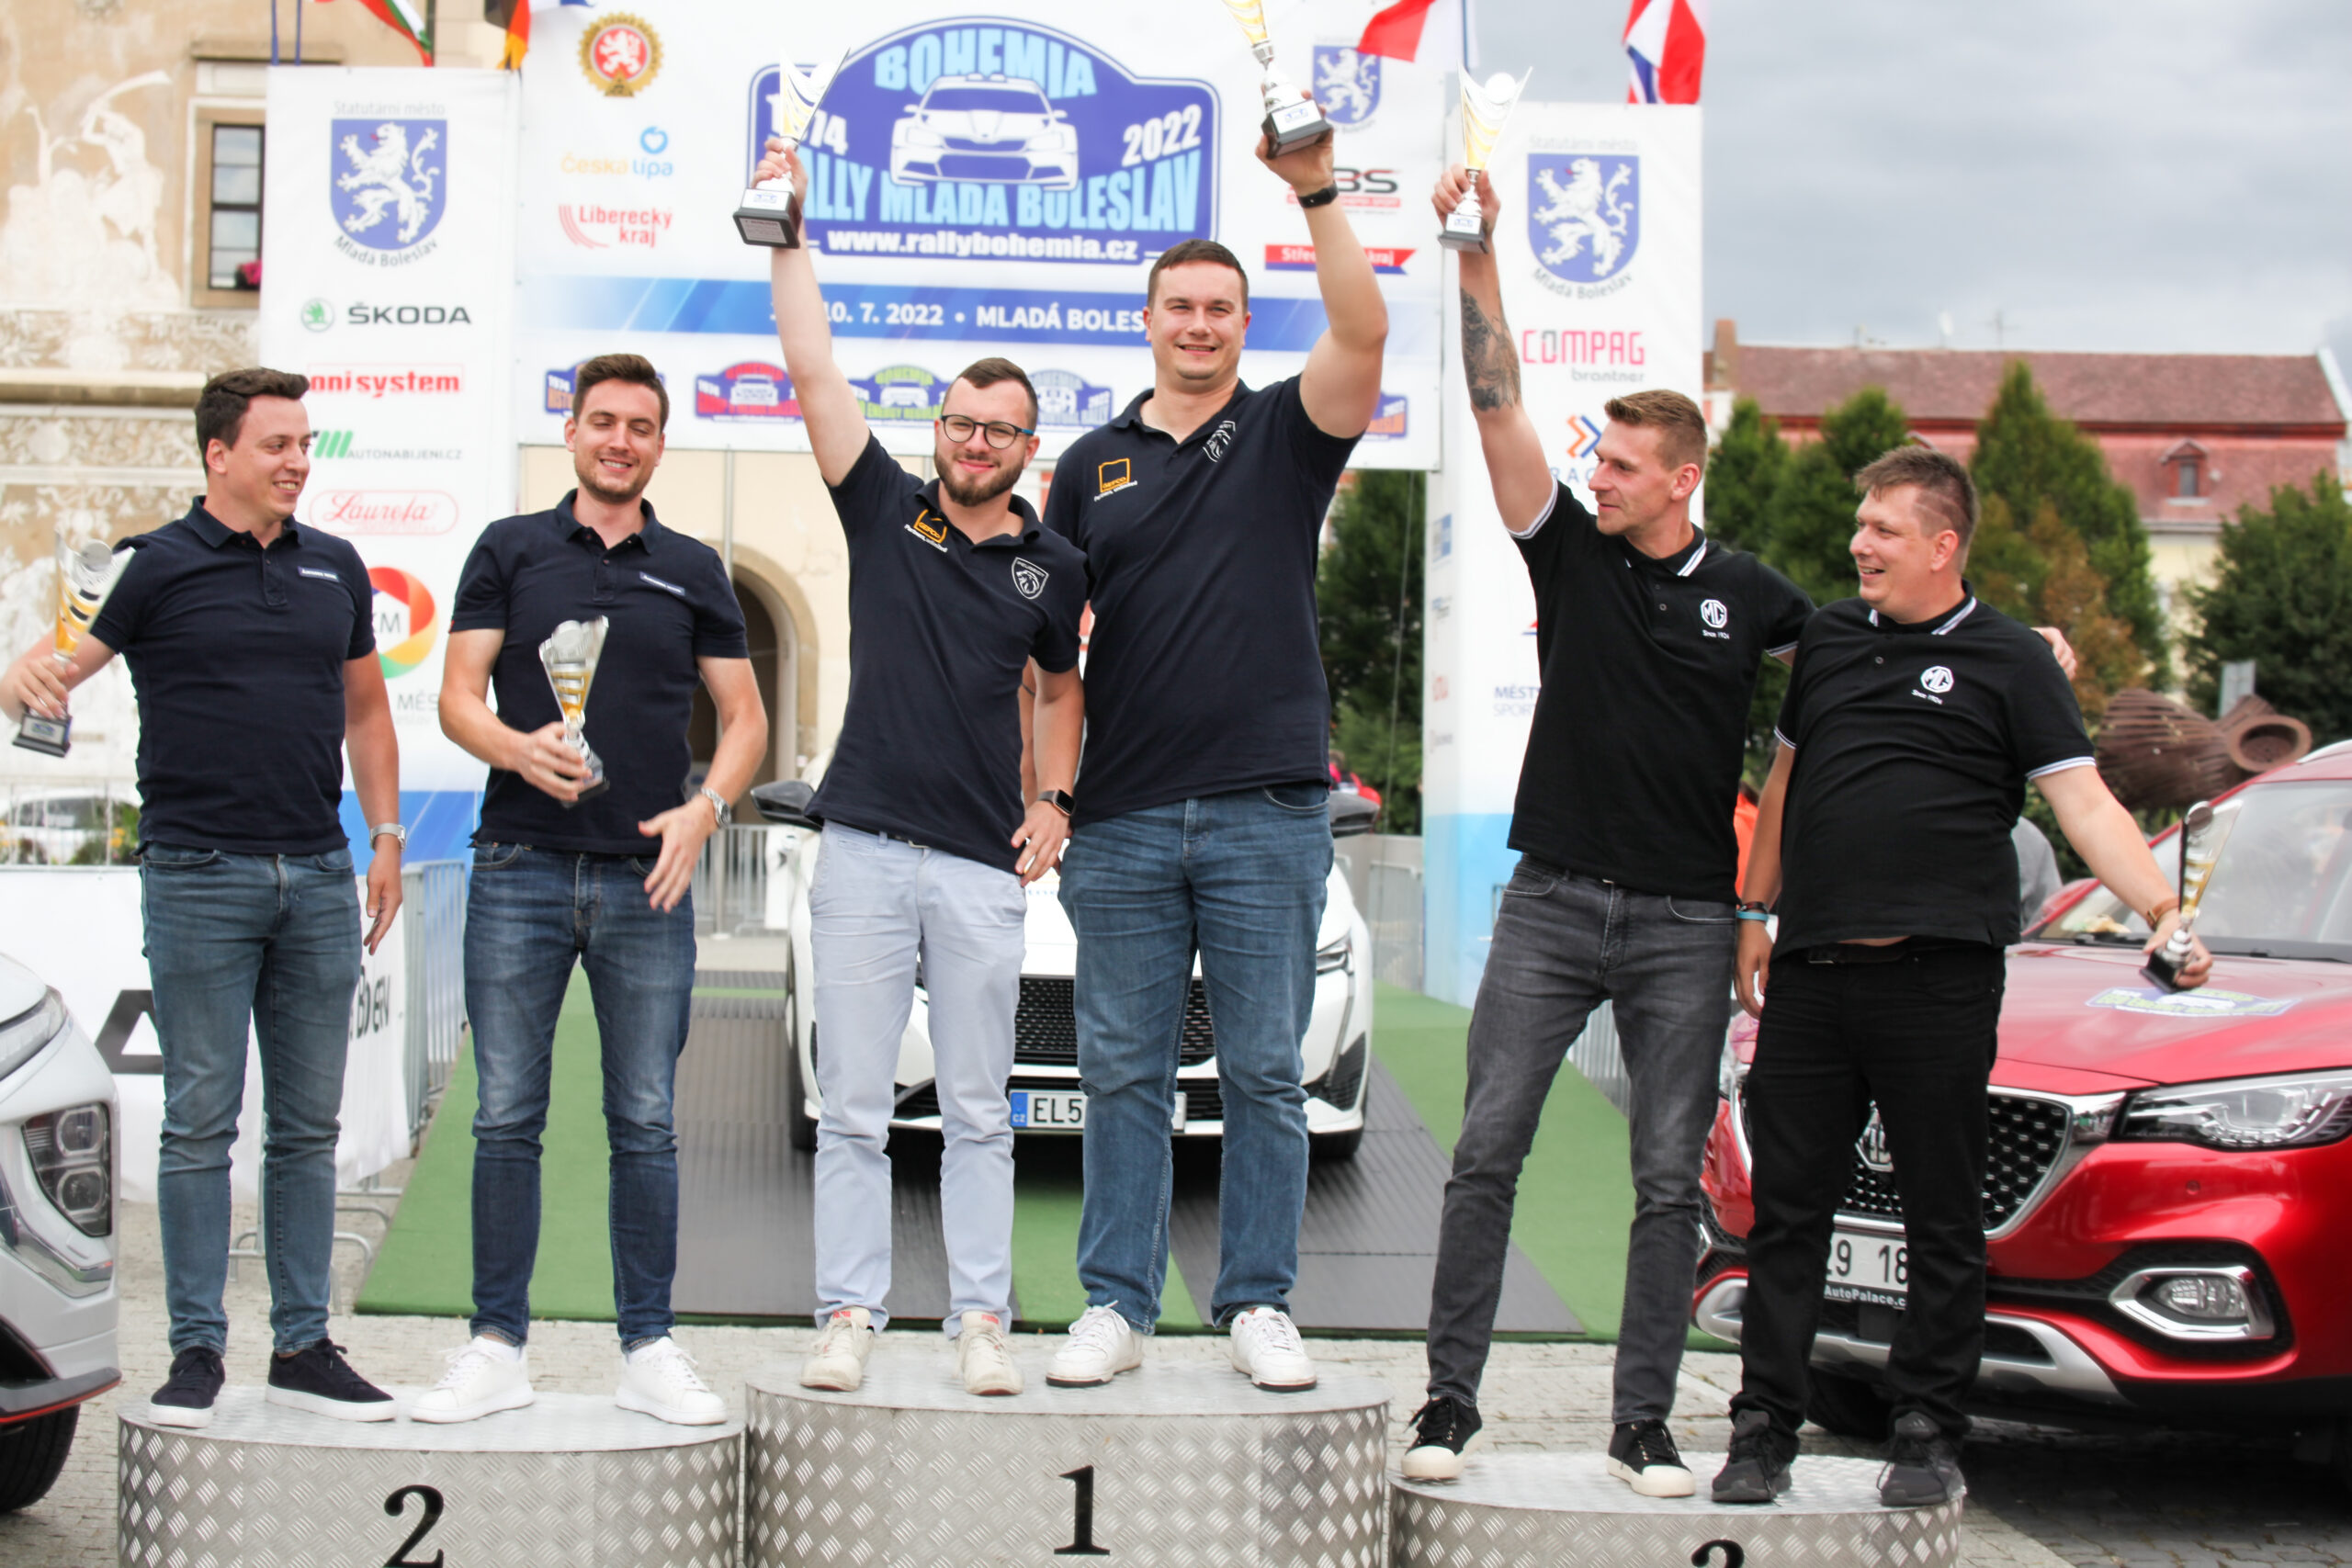 Vyhlášení vítězů a posádka MG Motor Czech Republic na třetím místě